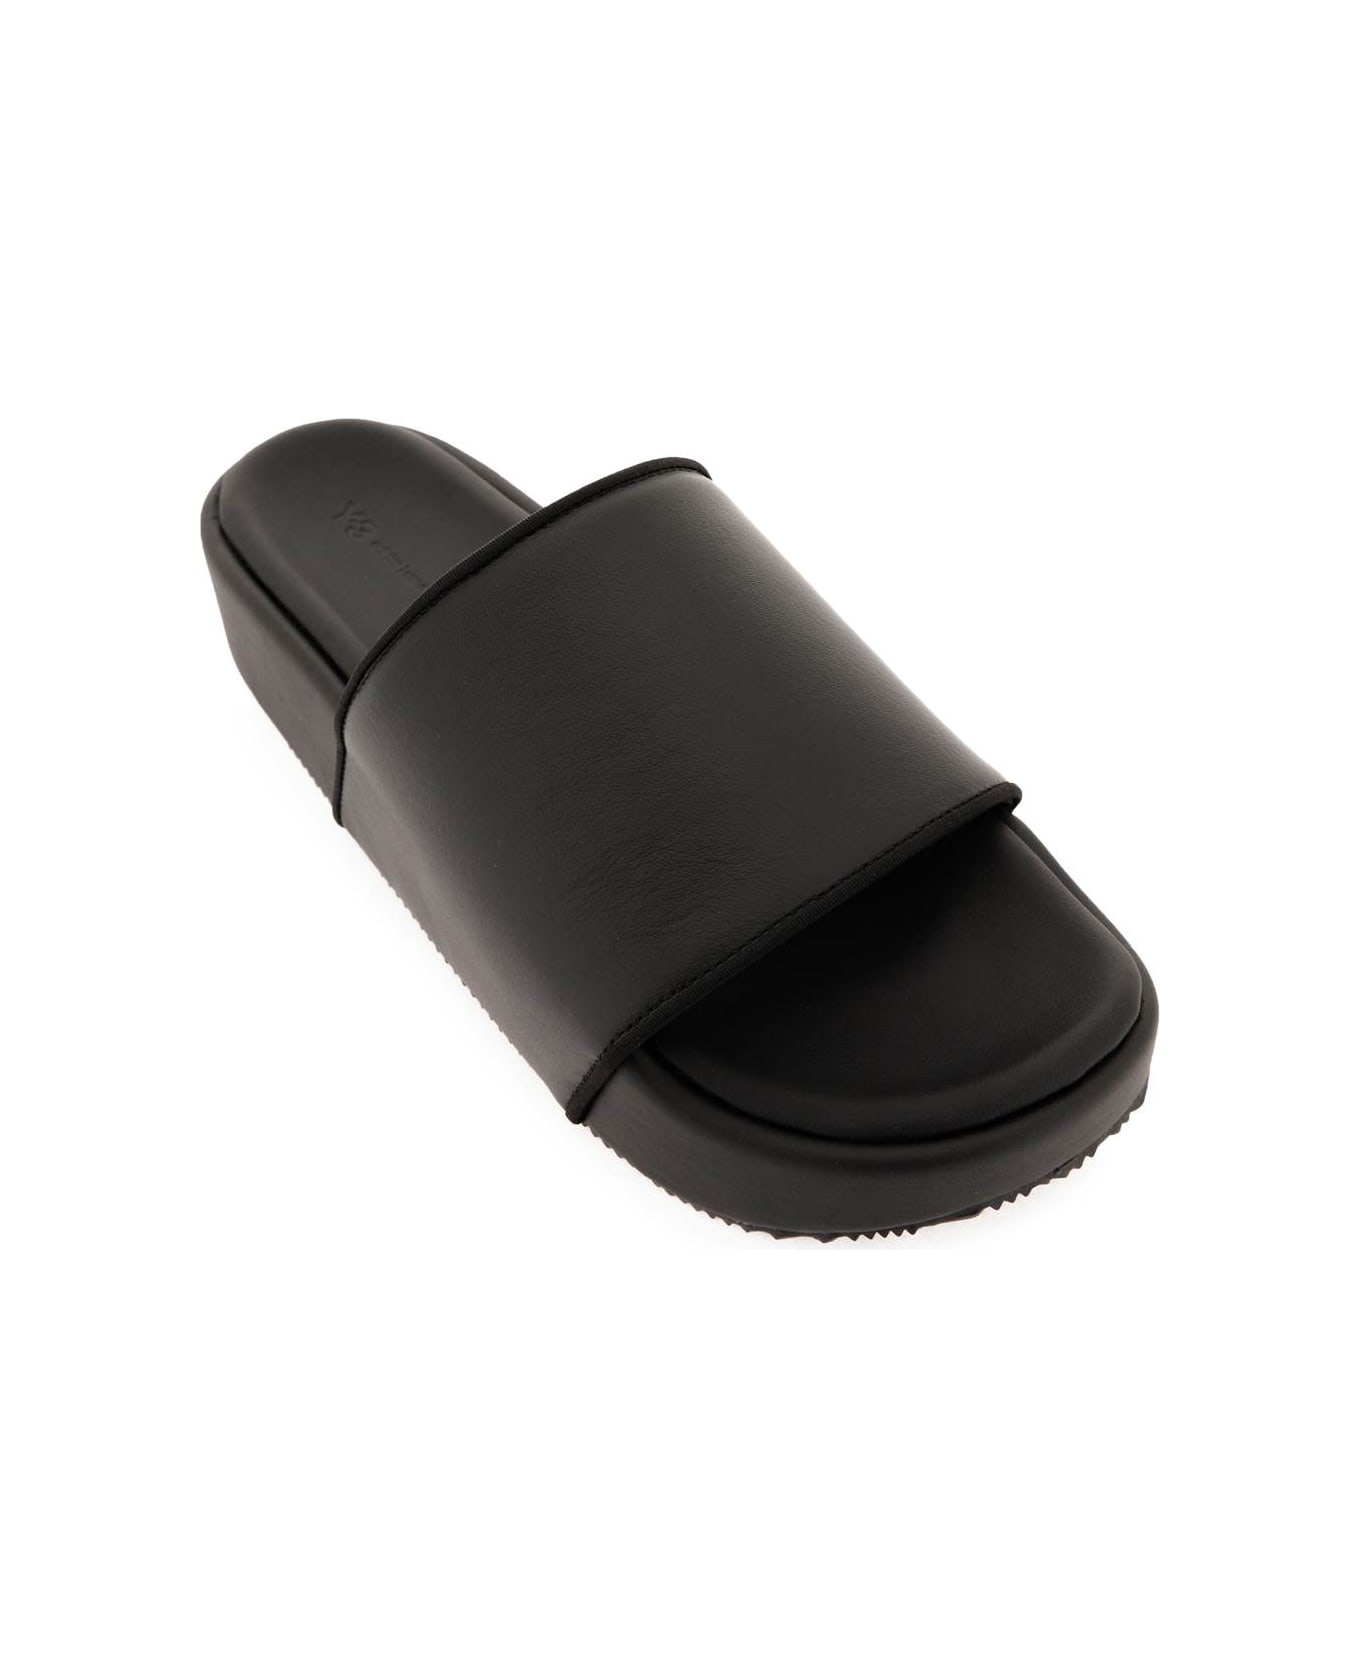 Y-3 Leather Slides - black